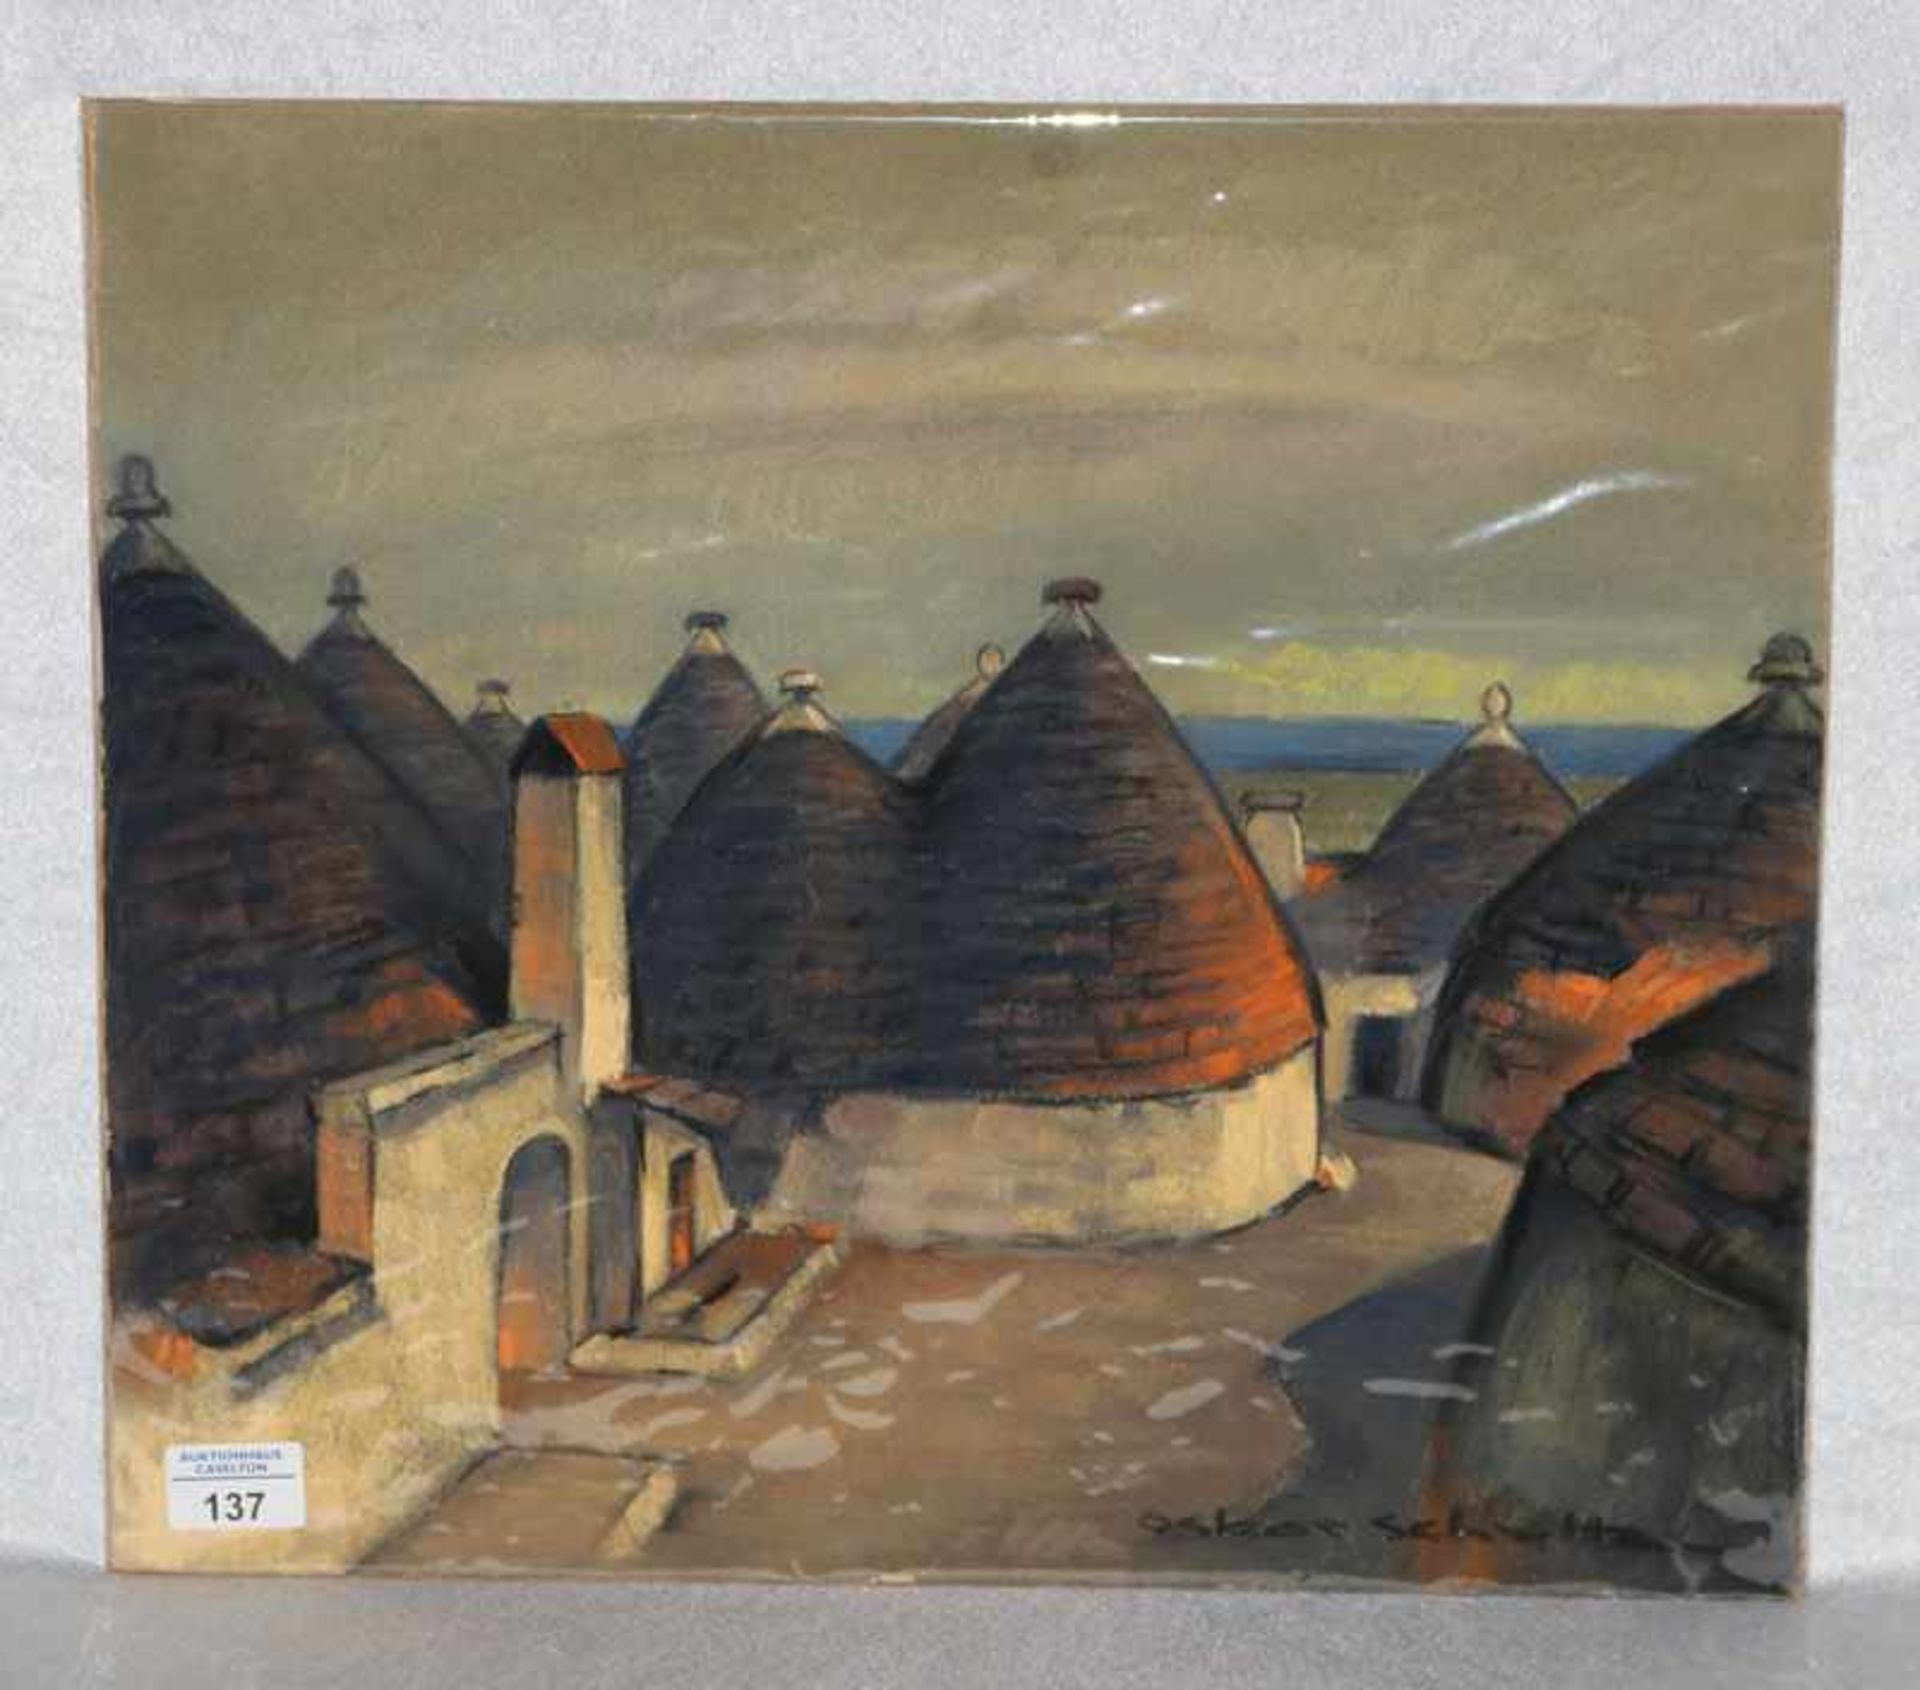 Gemälde Pastell 'Trulli, bei Bari', signiert Oskar Schultz, * 11.5.1892 Warwen + 21.3.1971 Garmisch,